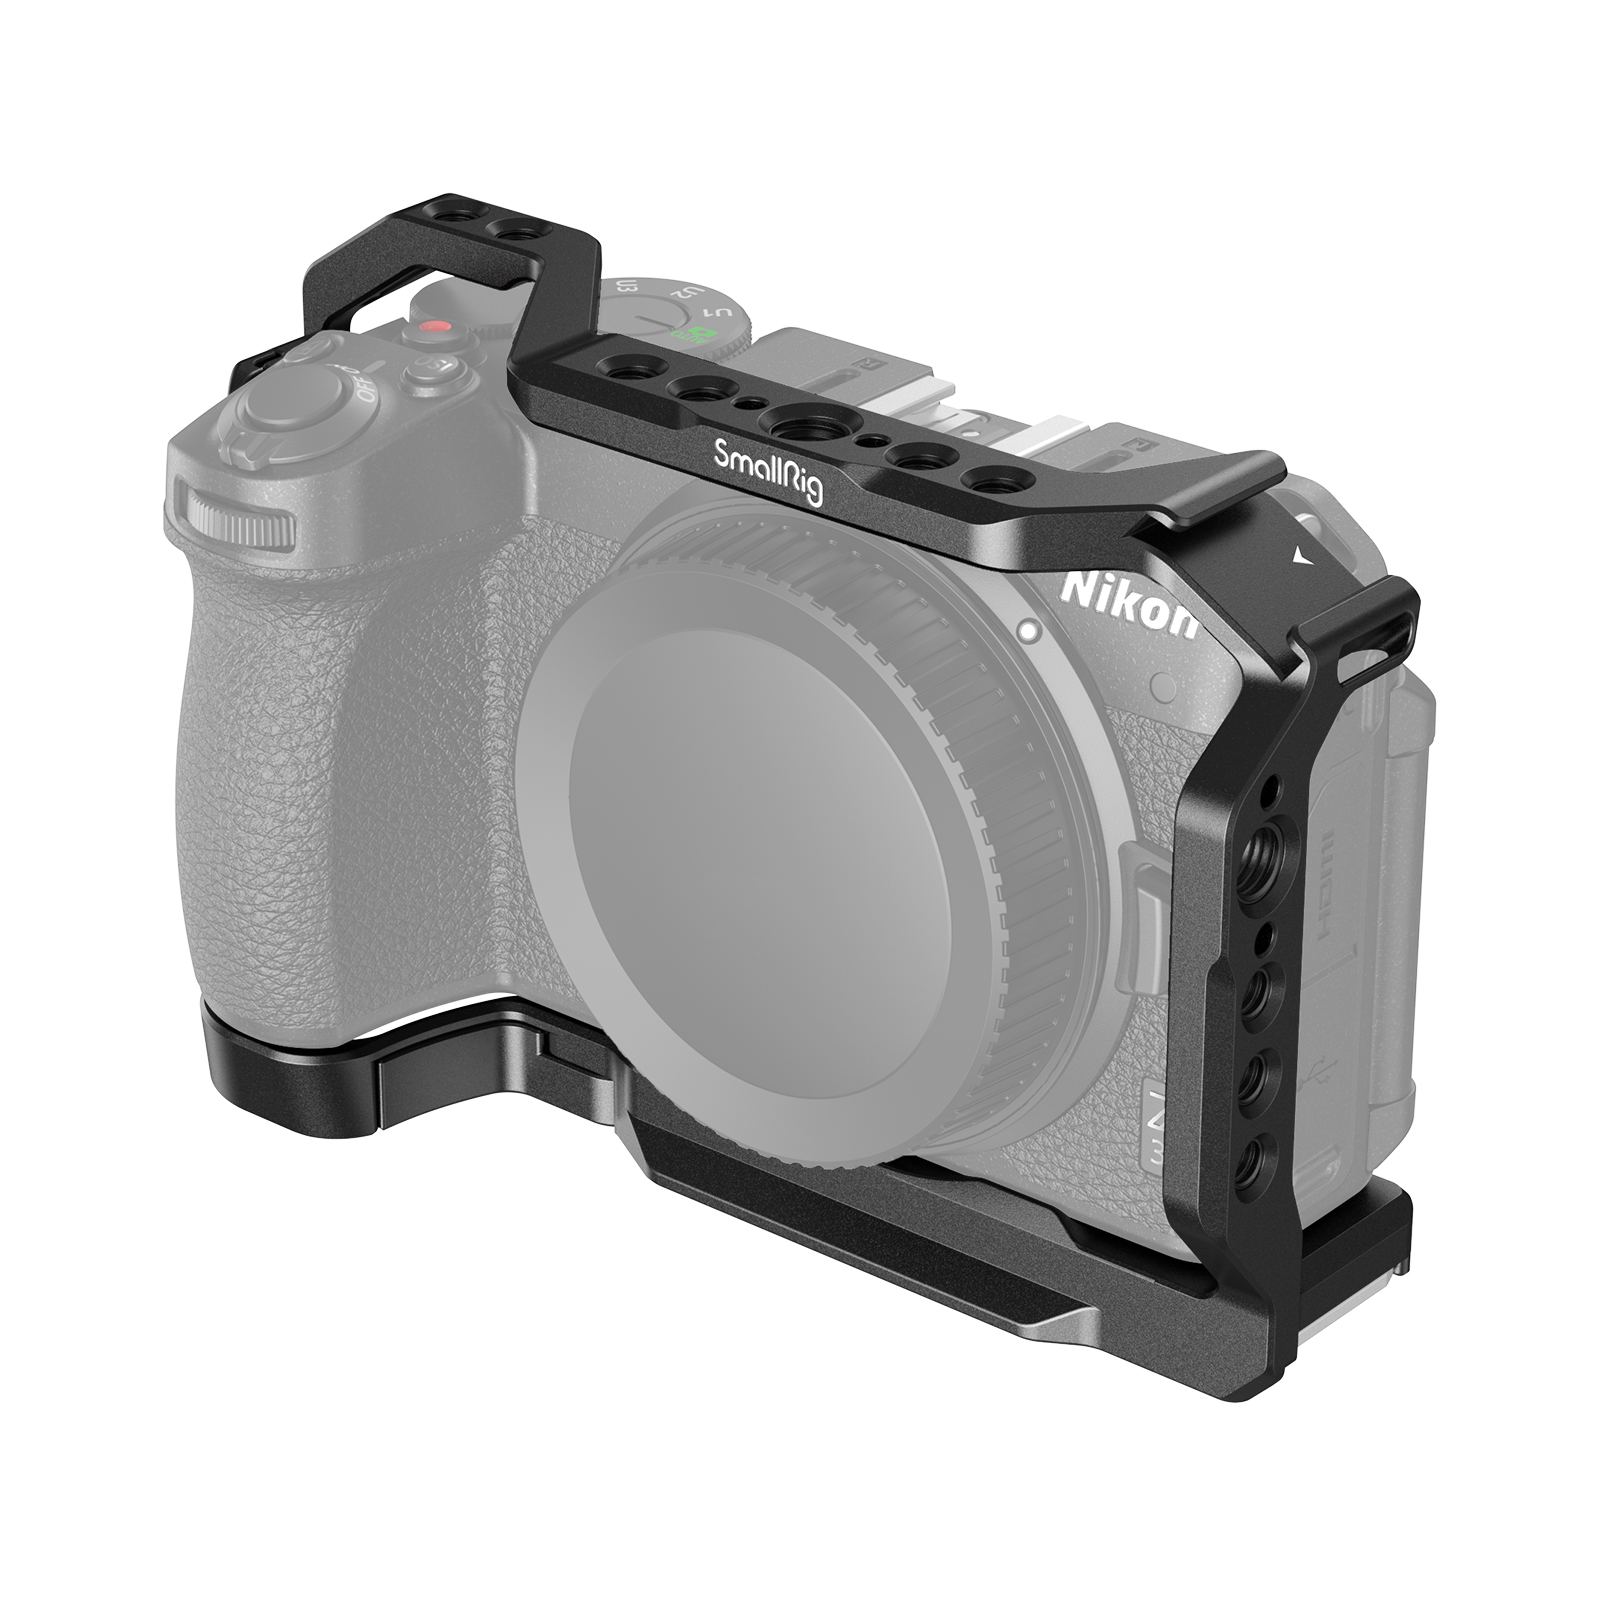 SmallRig Cage cho Nikon Z30 - 3858 - Khung bảo vệ máy ảnh